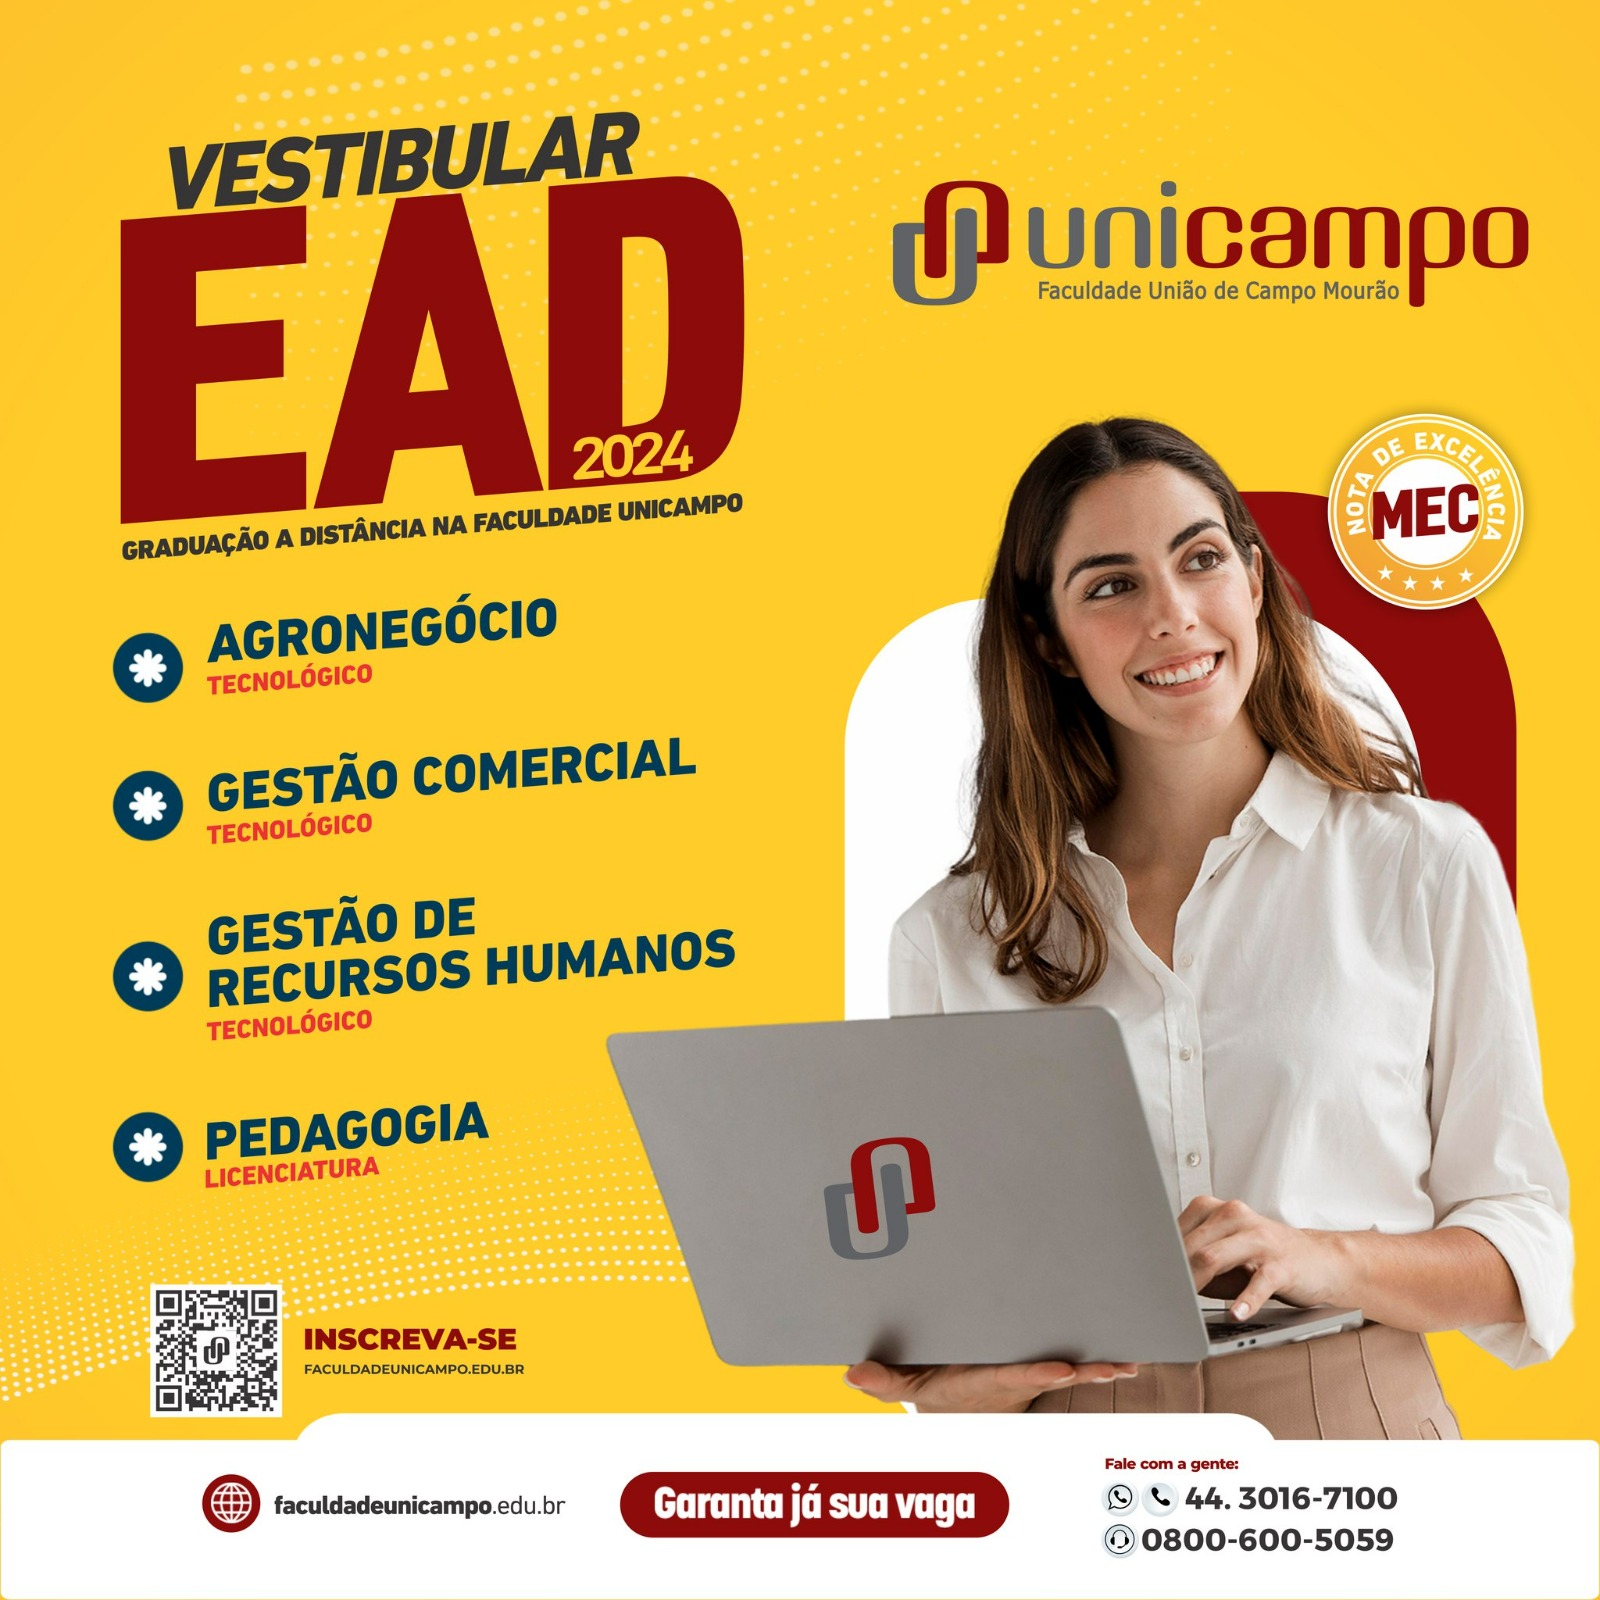 Novidade na Faculdade Unicampo: Novos cursos EAD! 